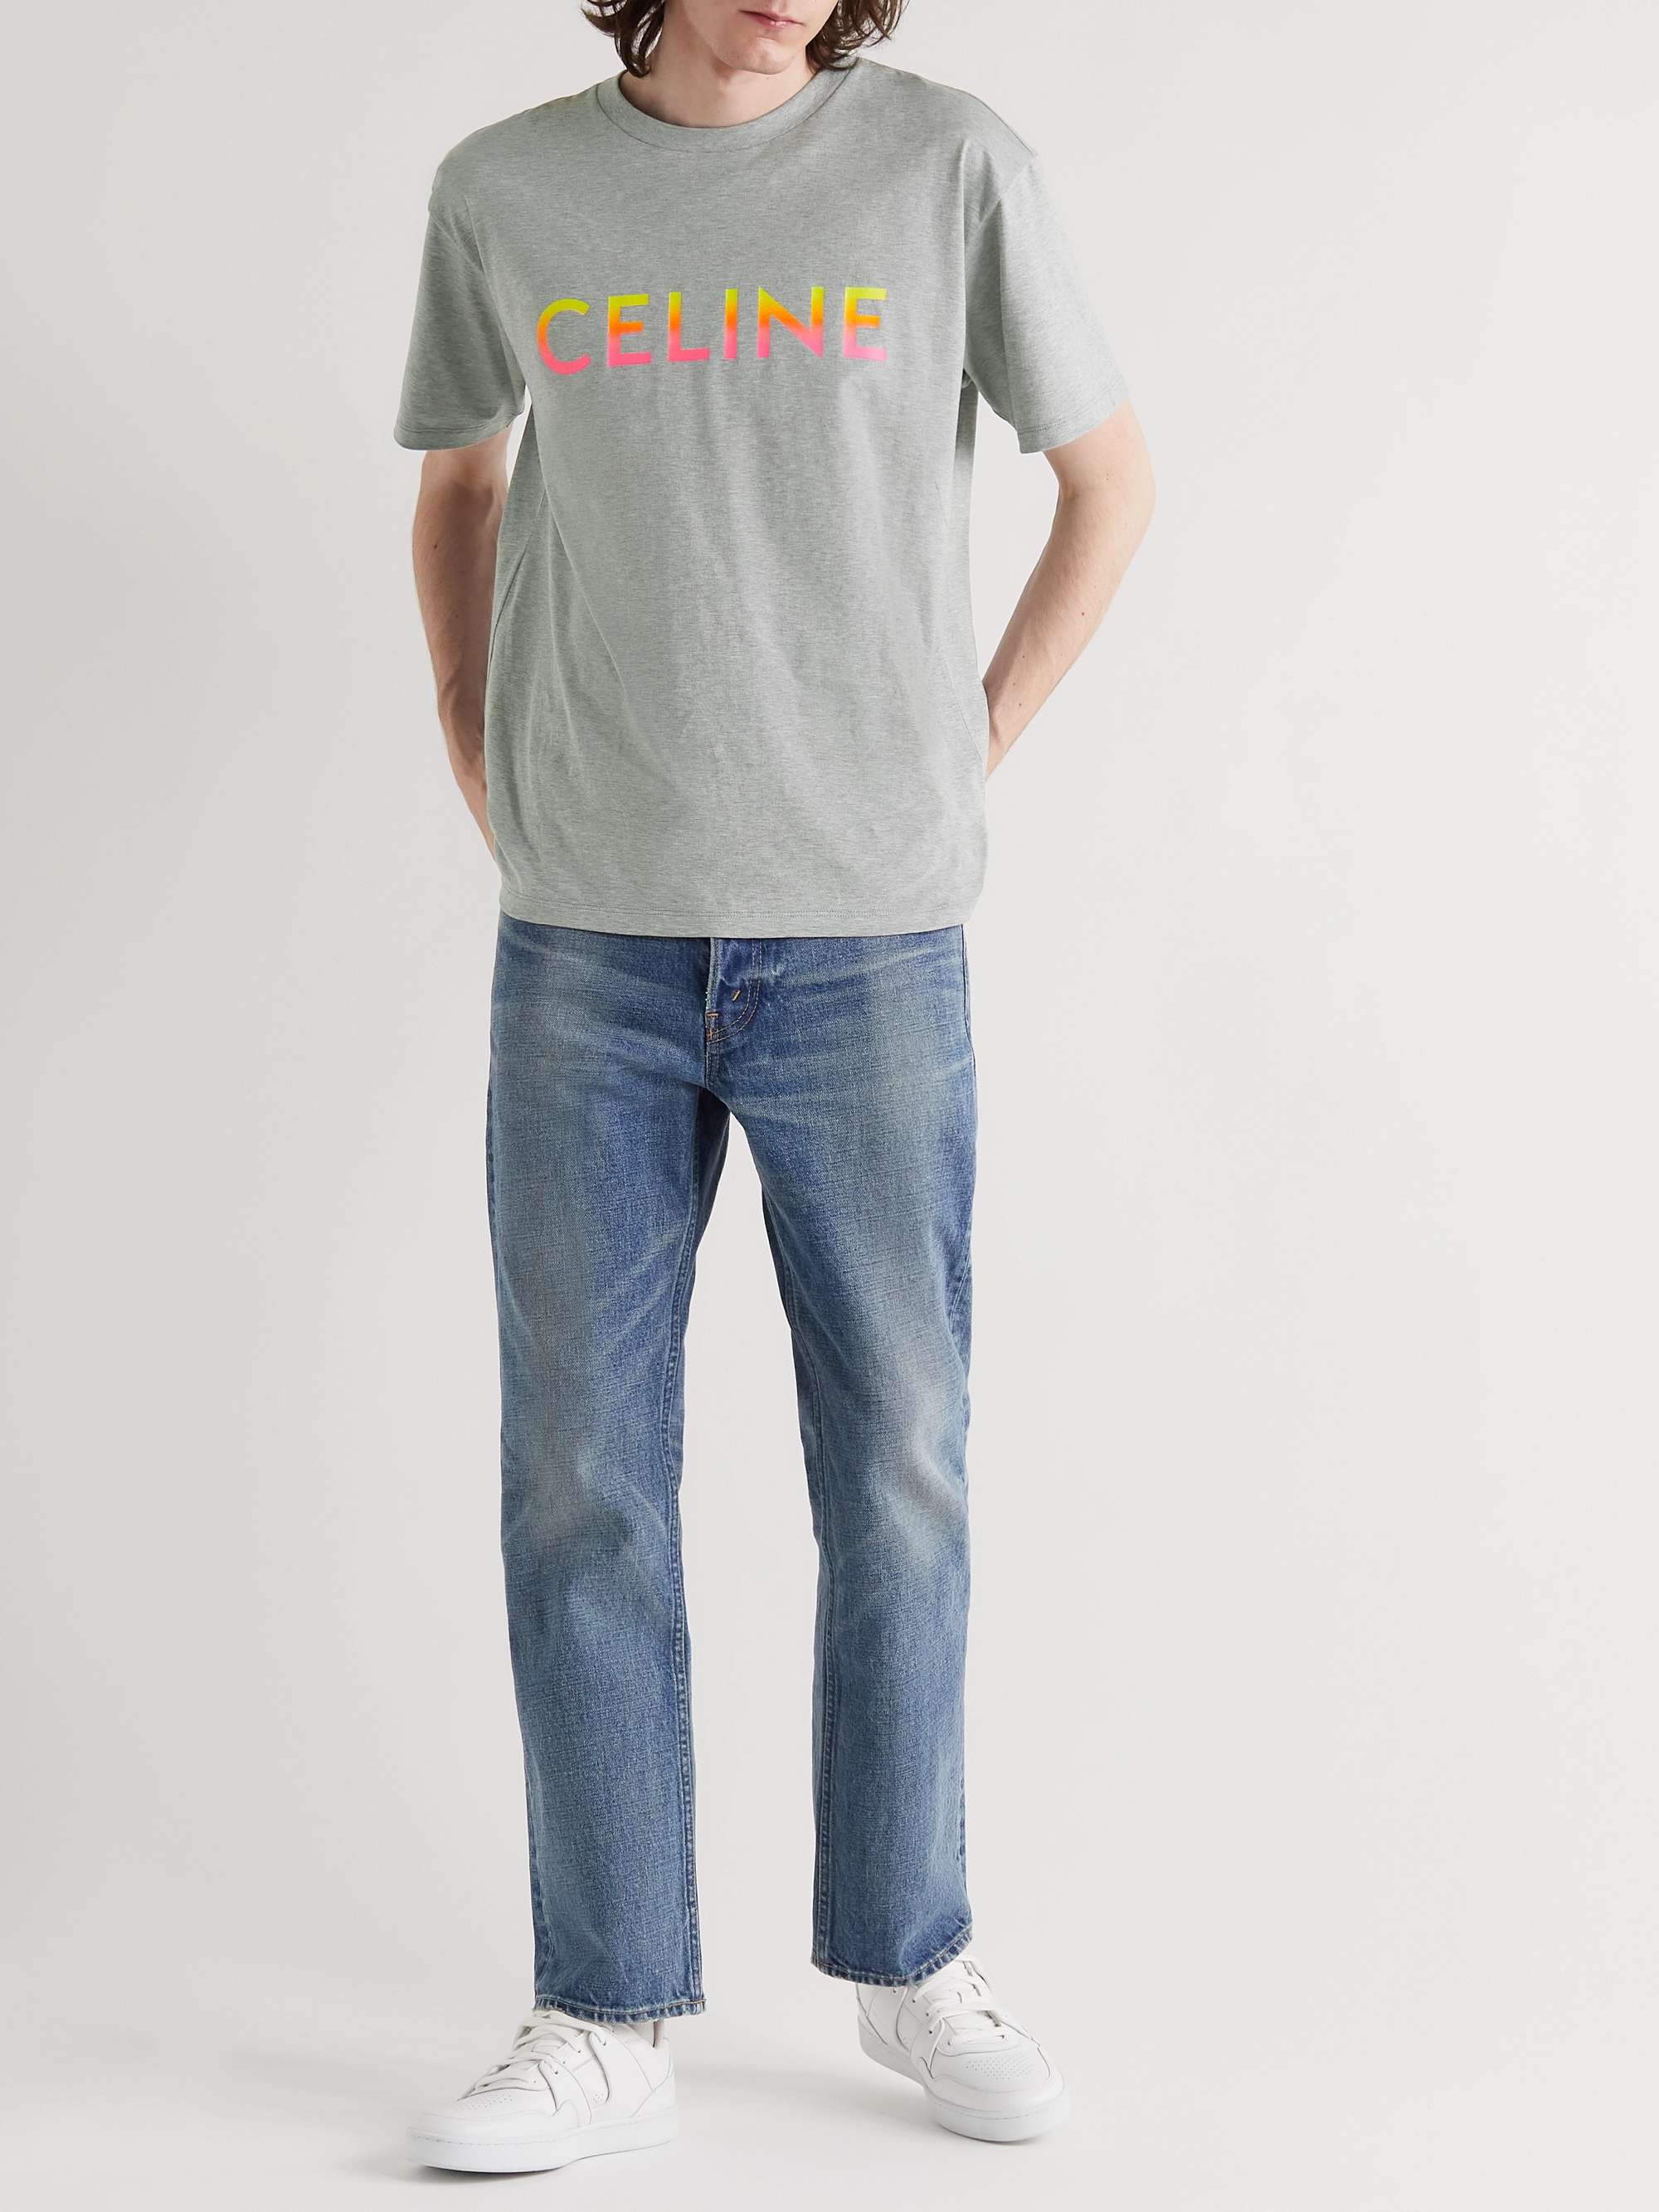 CELINE HOMME Oversized Logo-Print Cotton-Jersey T-Shirt for Men | MR PORTER